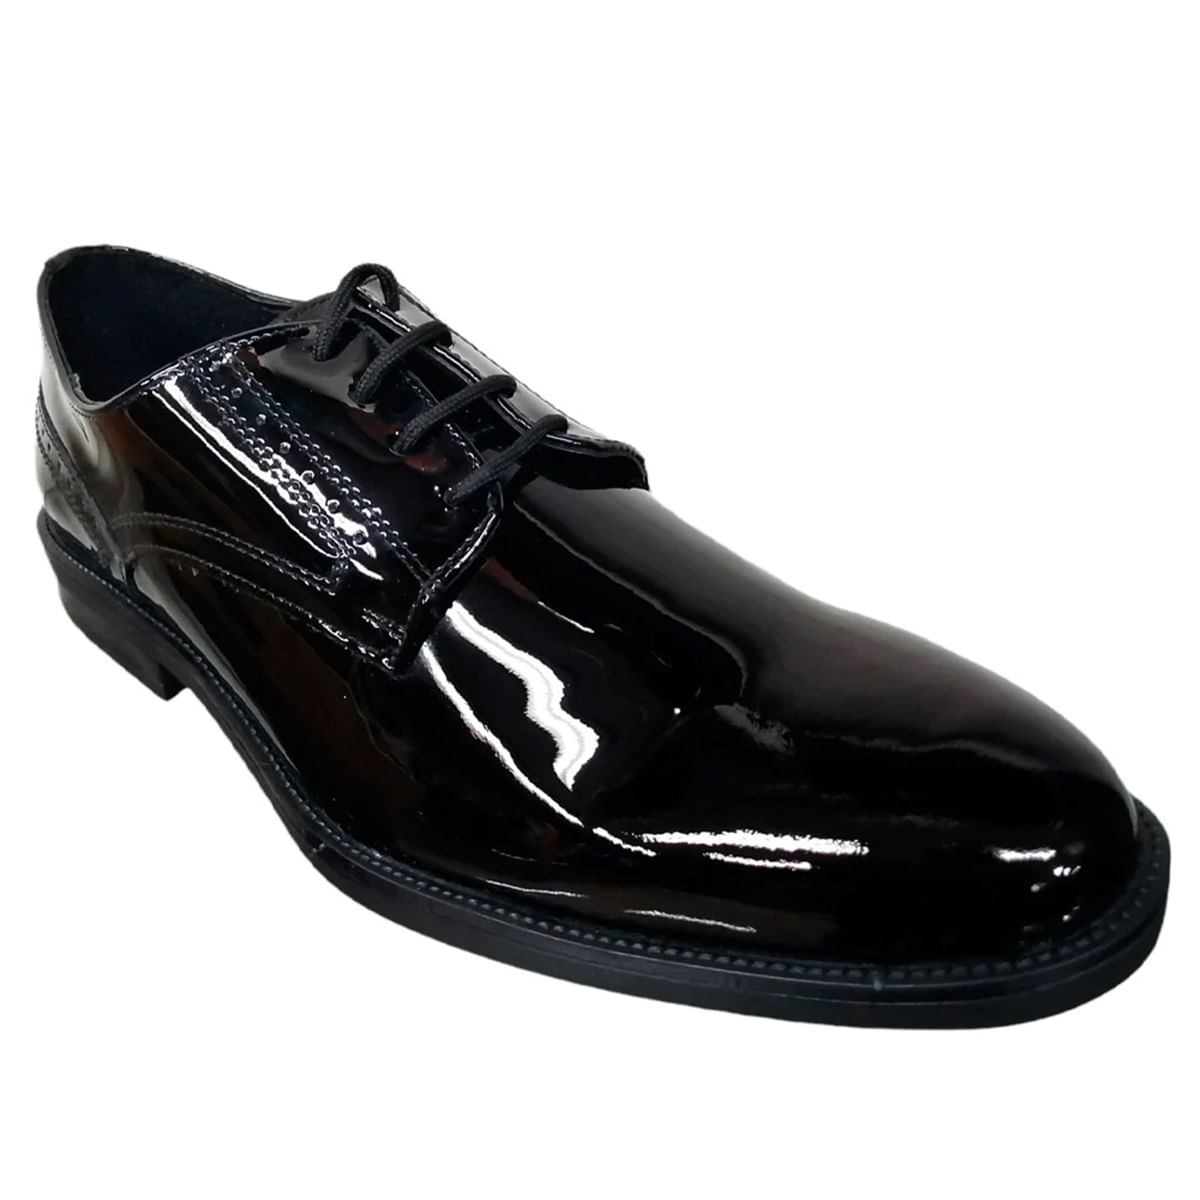 4200 - Zapatos Náuticos Hombre Piel Marino y Negro - Rodri Market